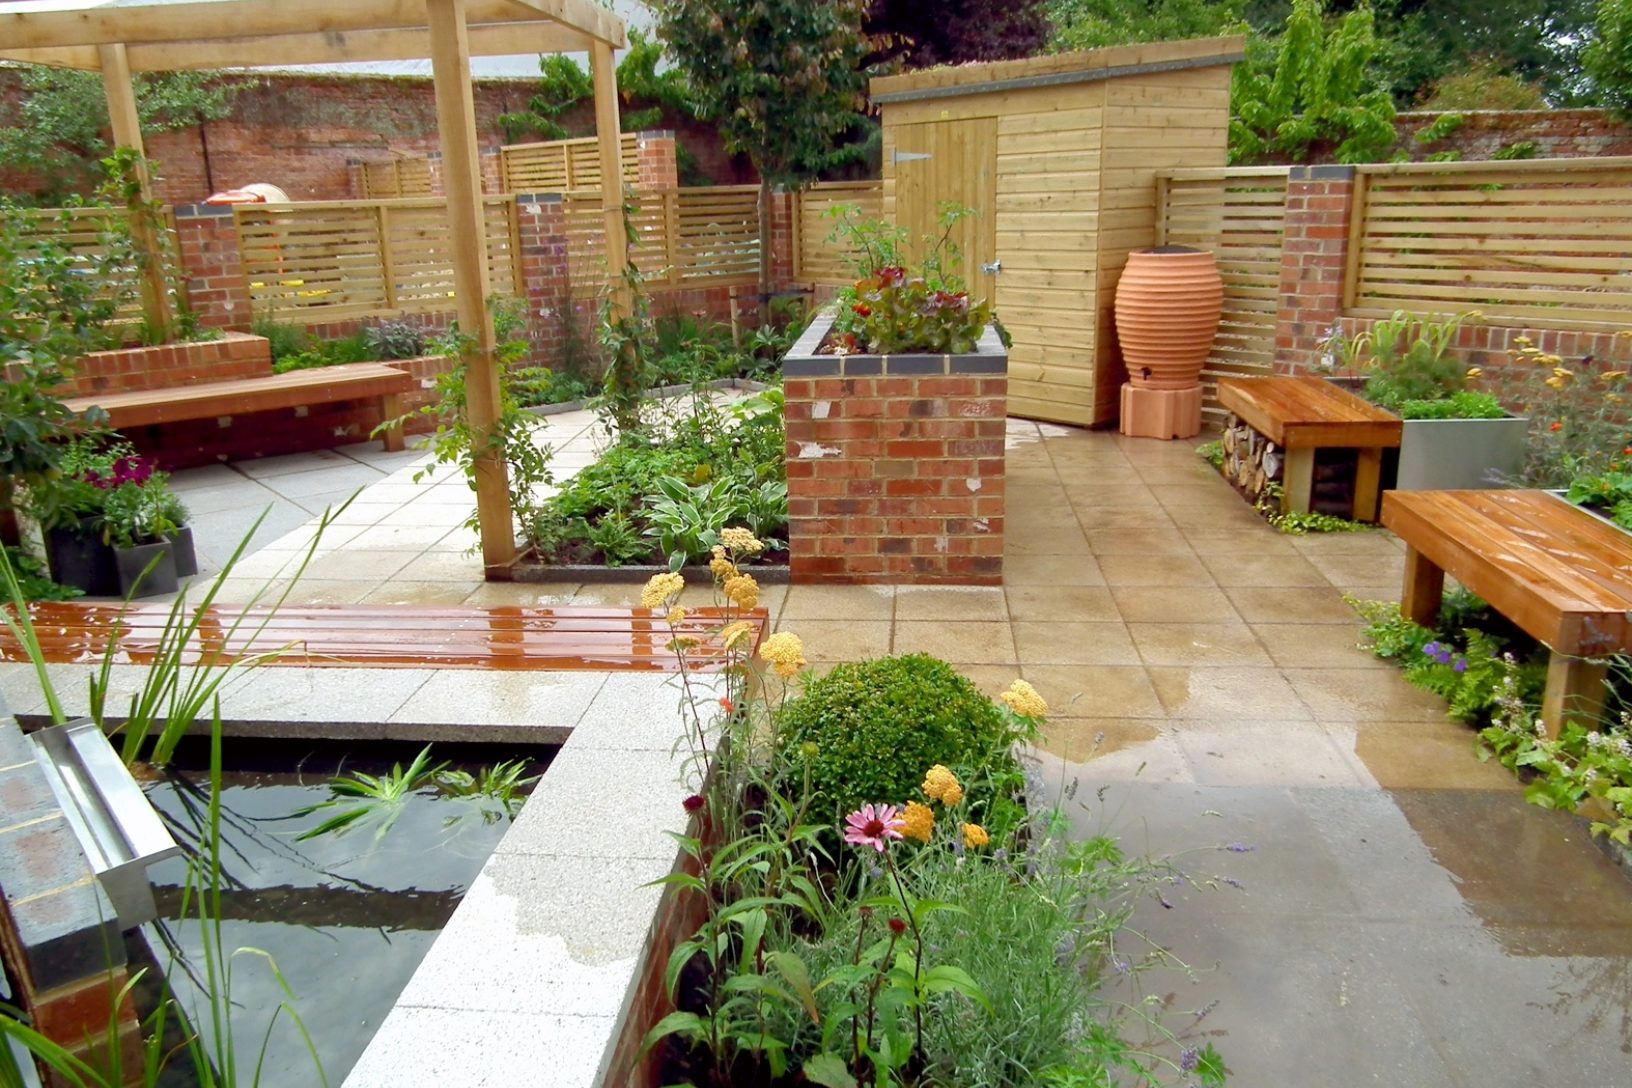 New Understanding disability in garden design   Thrive